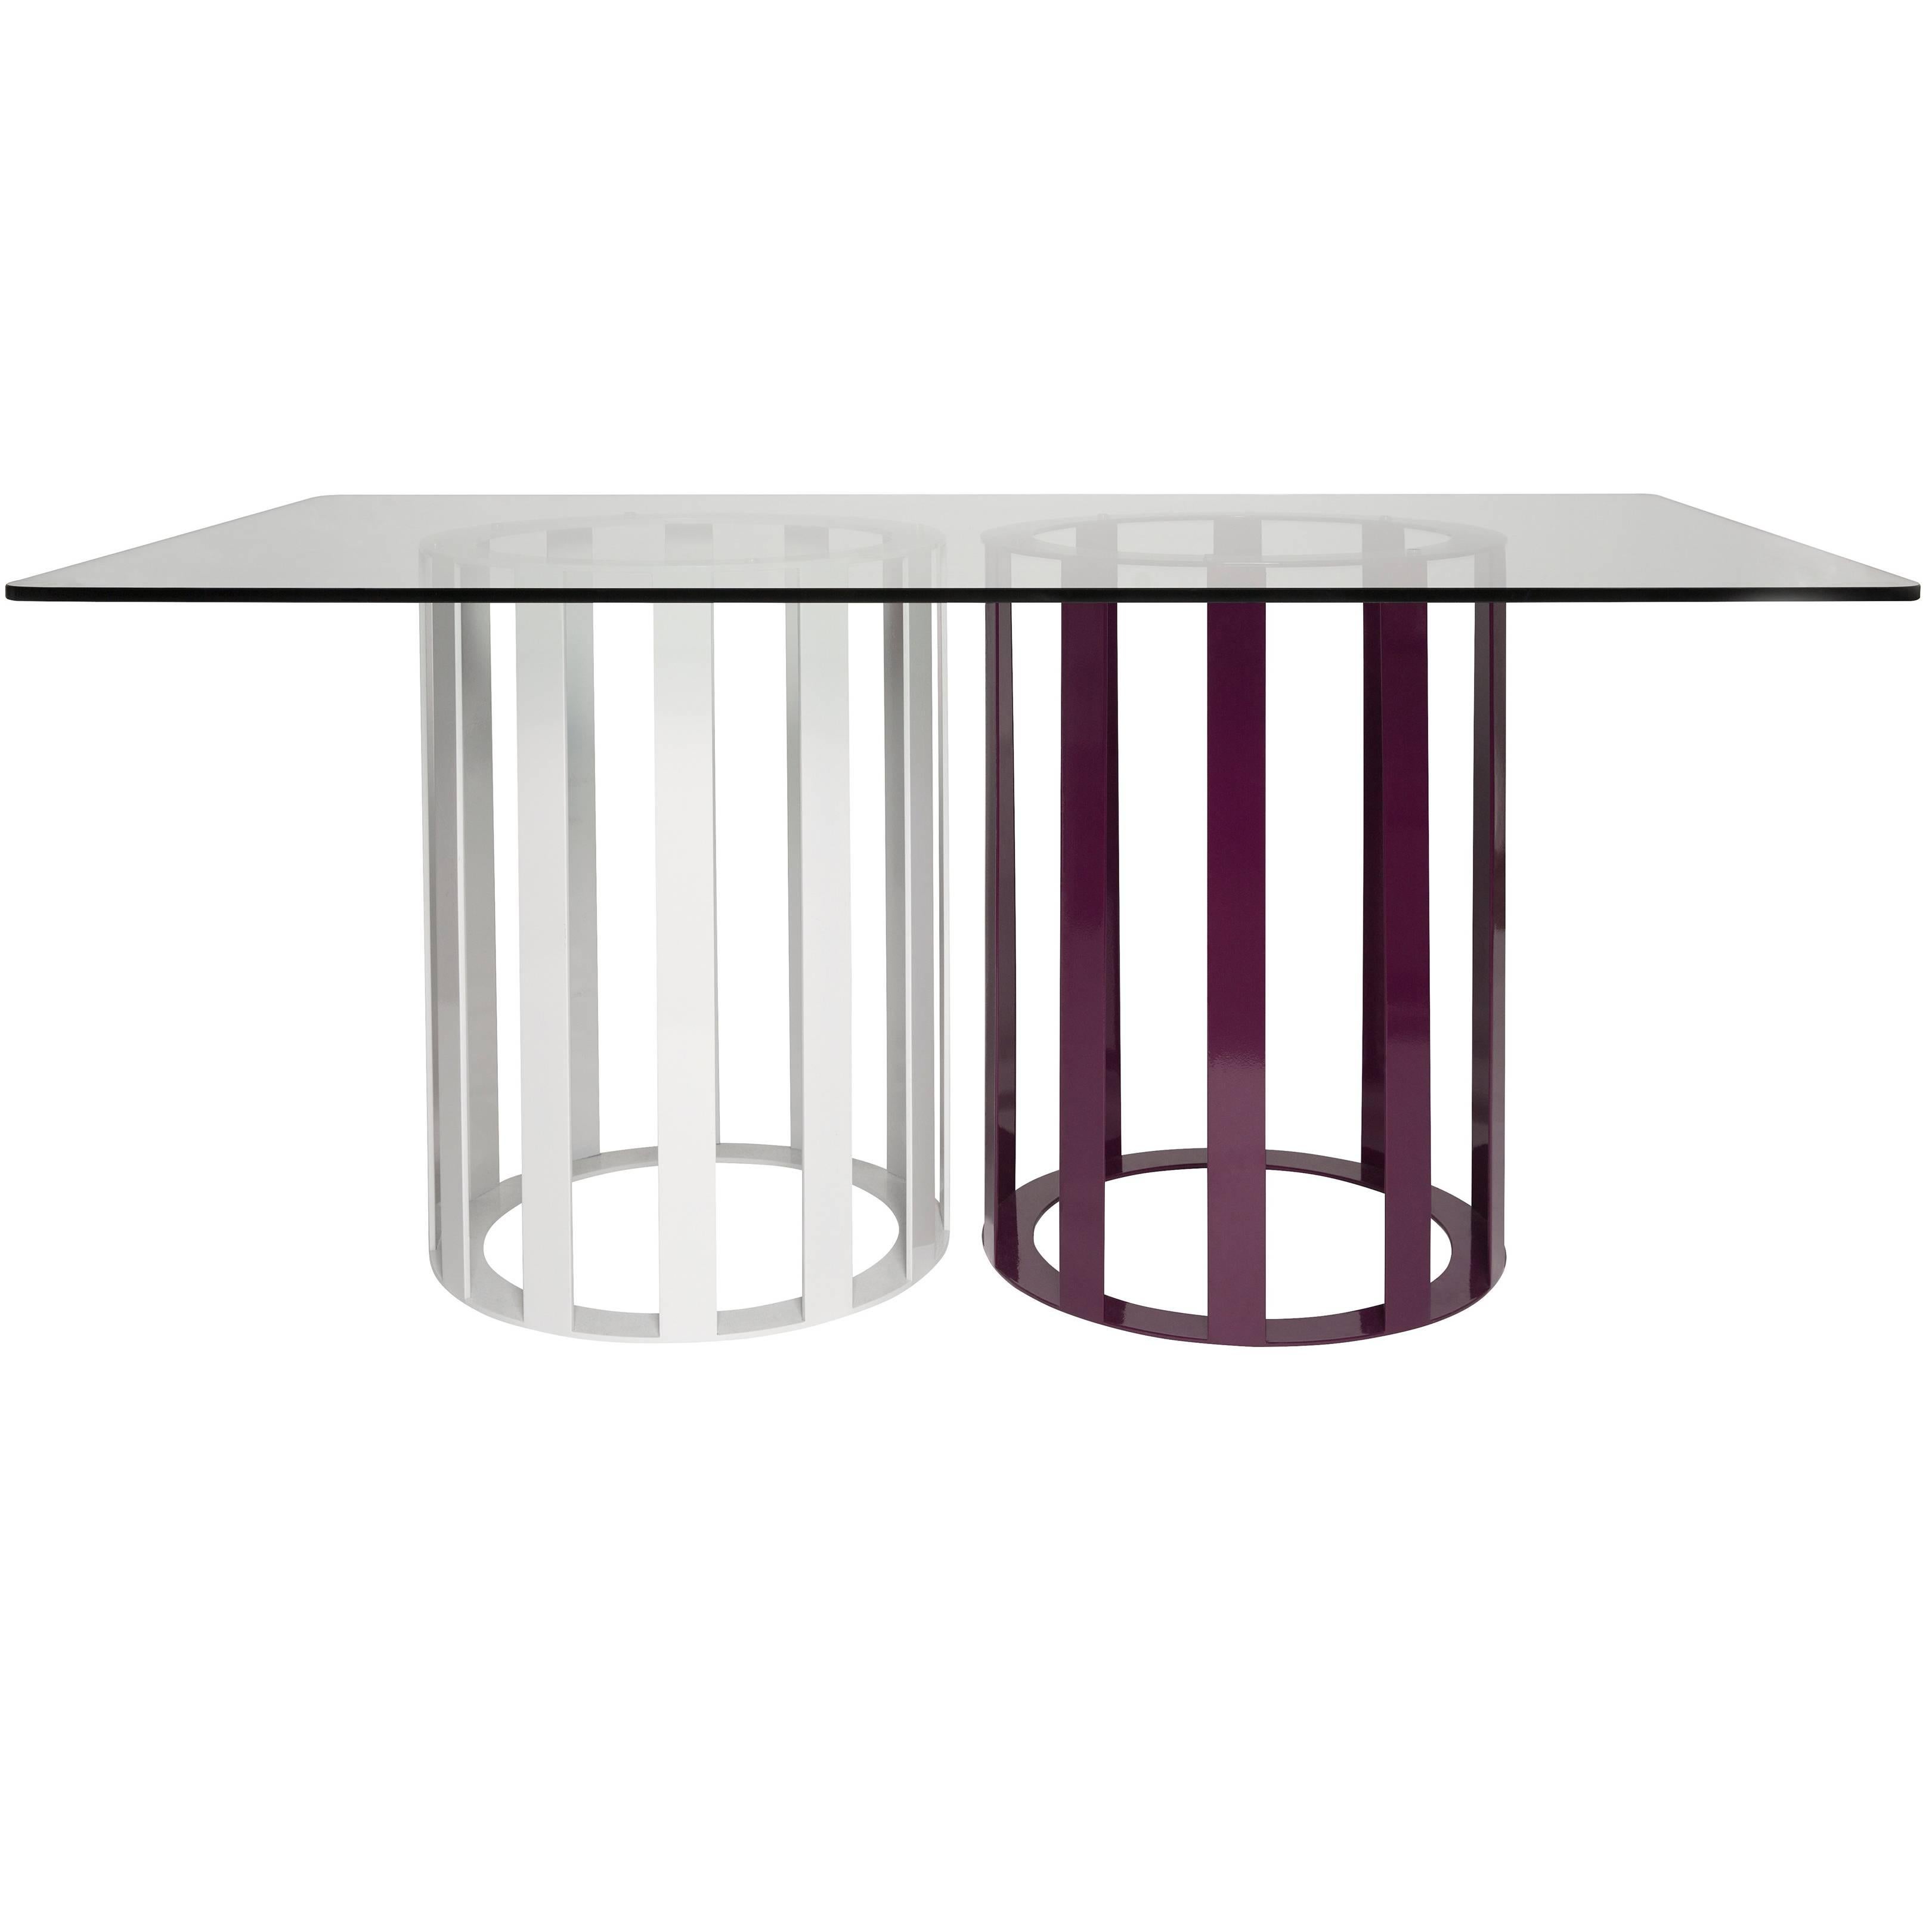  Table de salle à manger rectangulaire Flux de Pieces, moderne et personnalisable en bois de pierre et verre